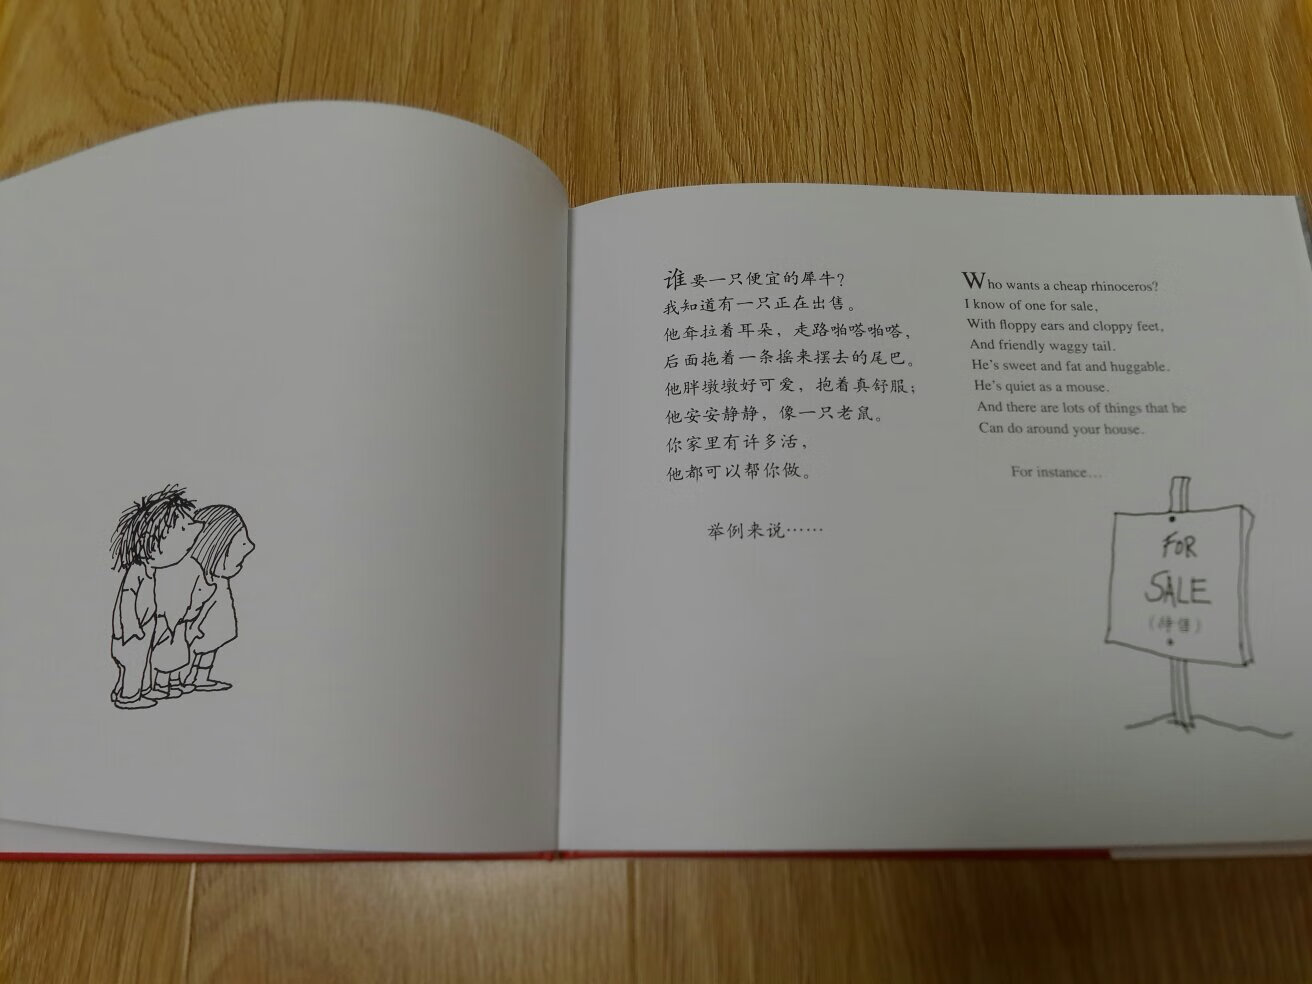 双语的，相当于买原版了，中文可以自己重新翻译。